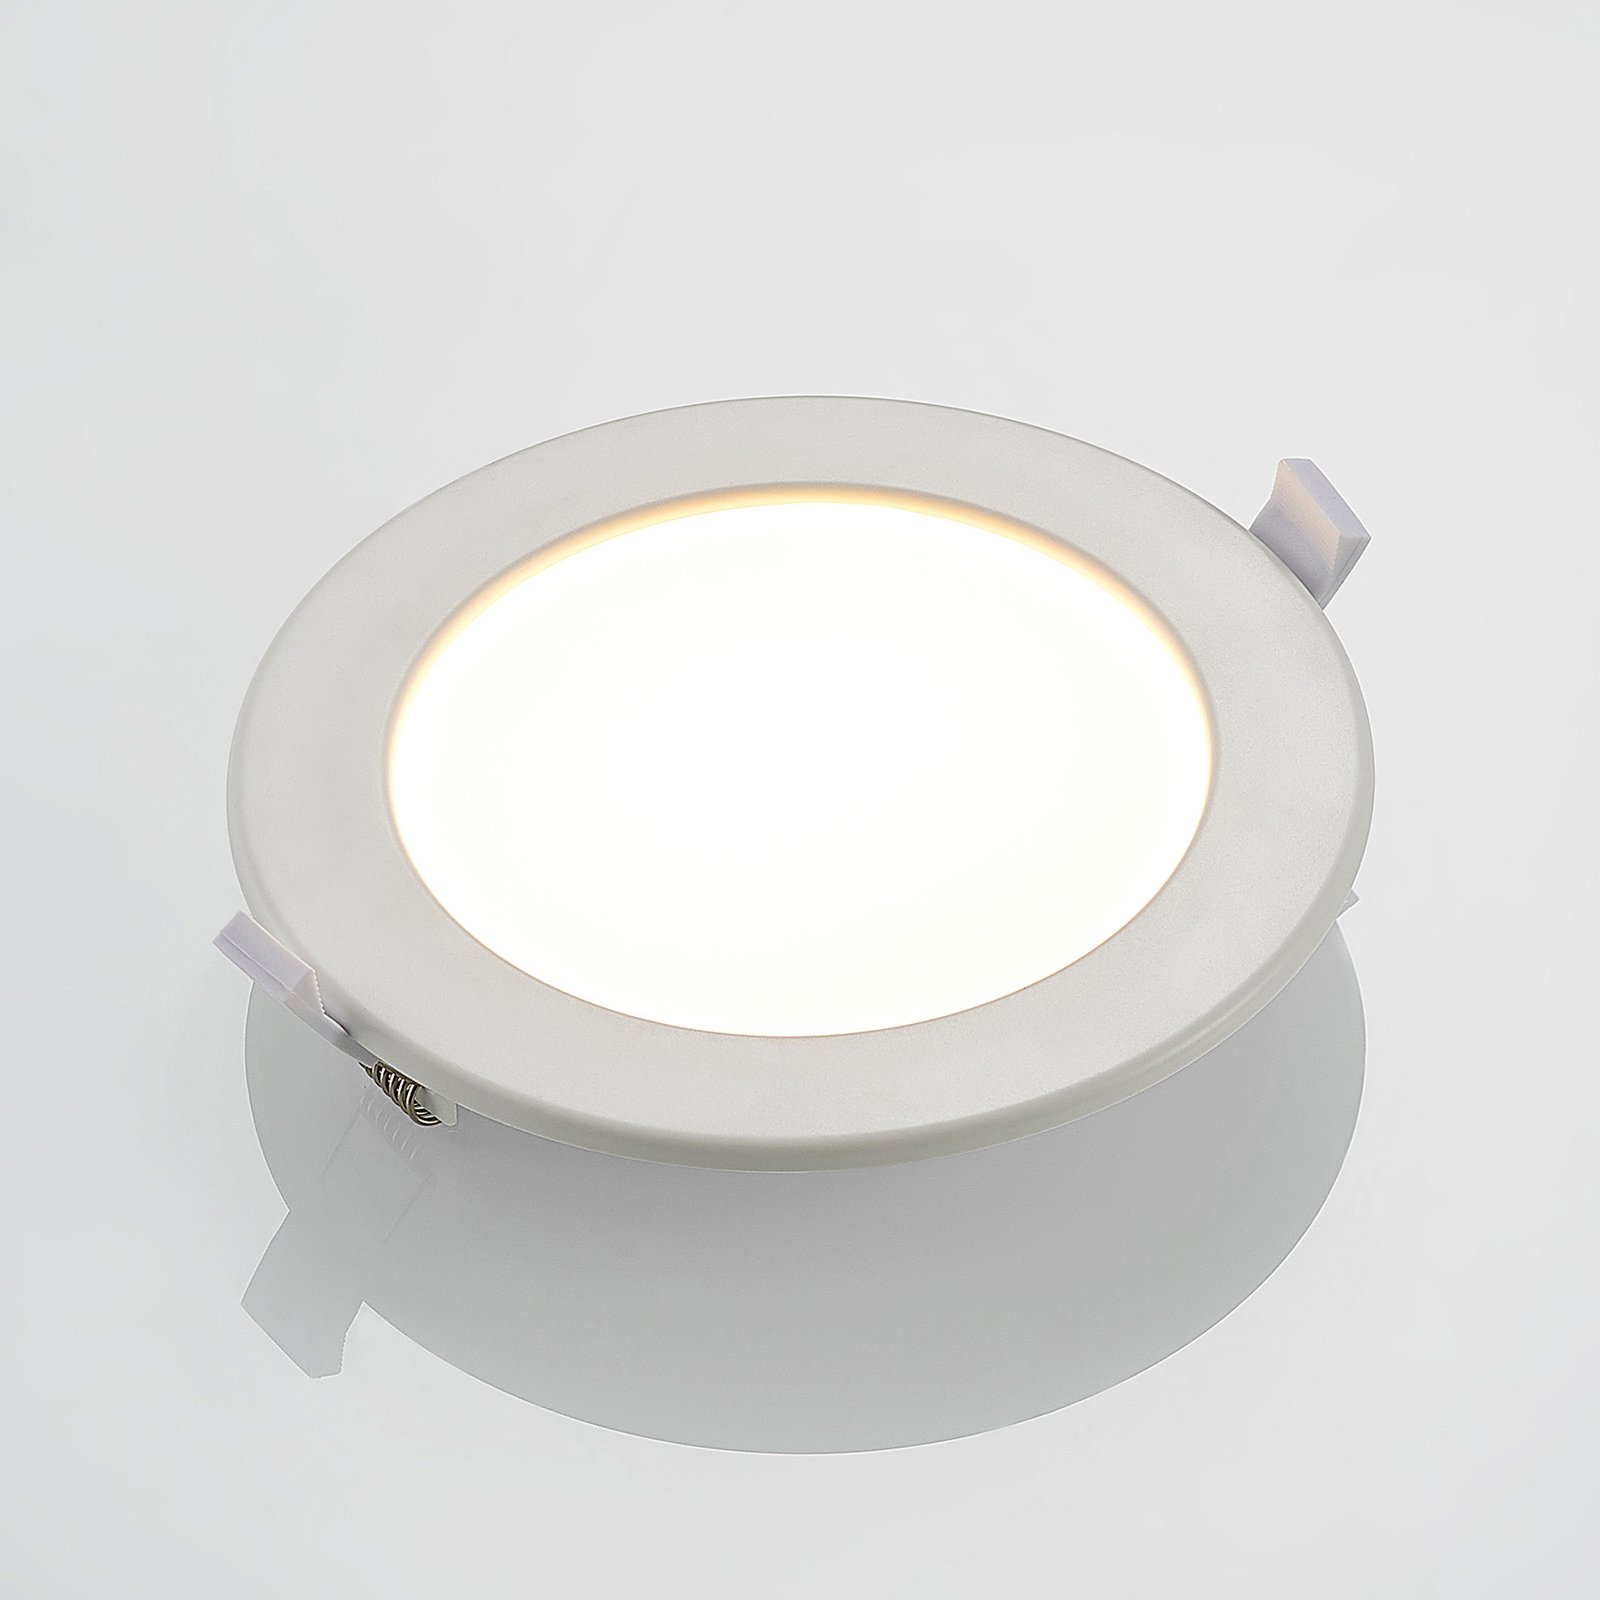 Prios Cadance LED-Einbaulampe weiß 17 cm 10er-Set